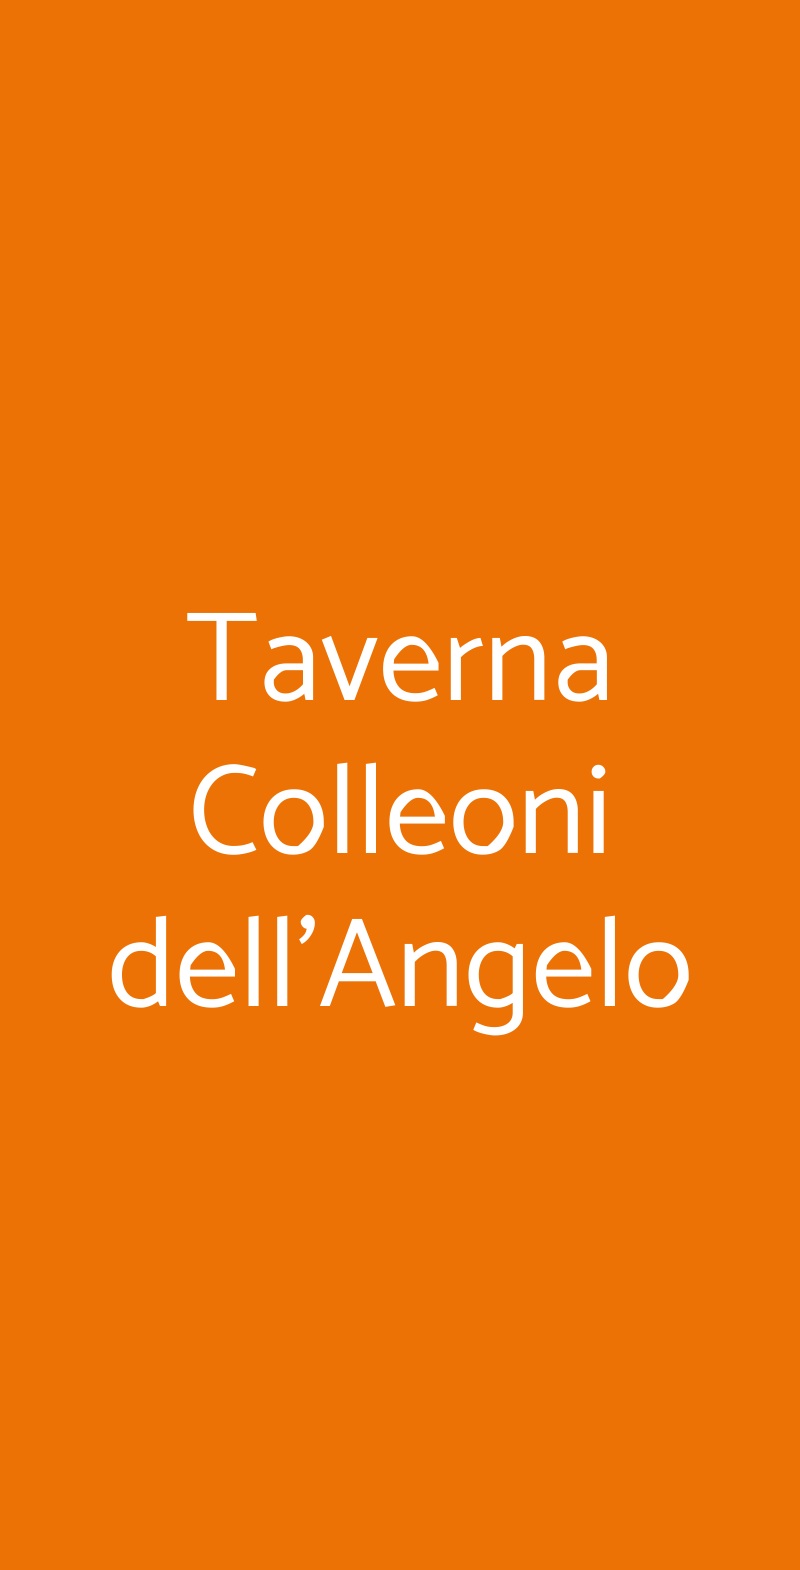 Taverna Colleoni dell'Angelo Bergamo menù 1 pagina